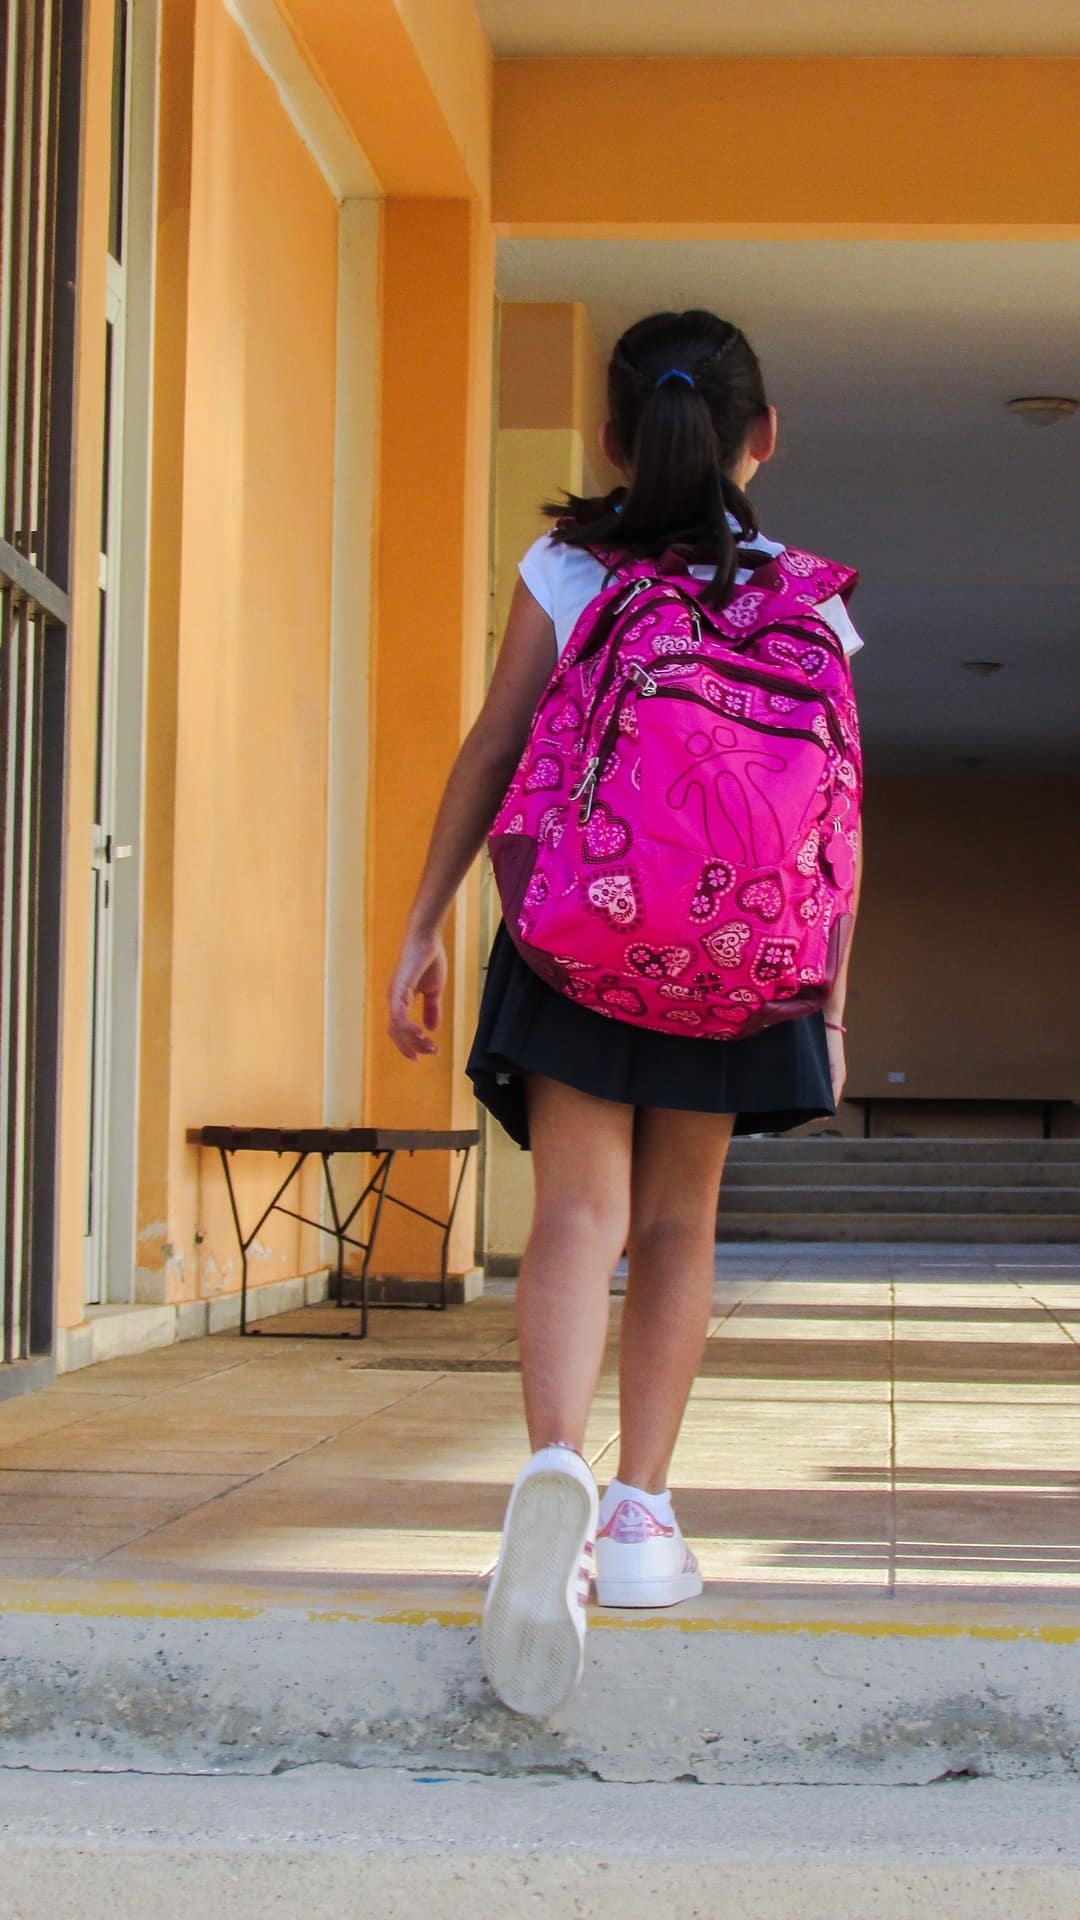 šolske torbe vplivajo na otrokovo hrbtenico